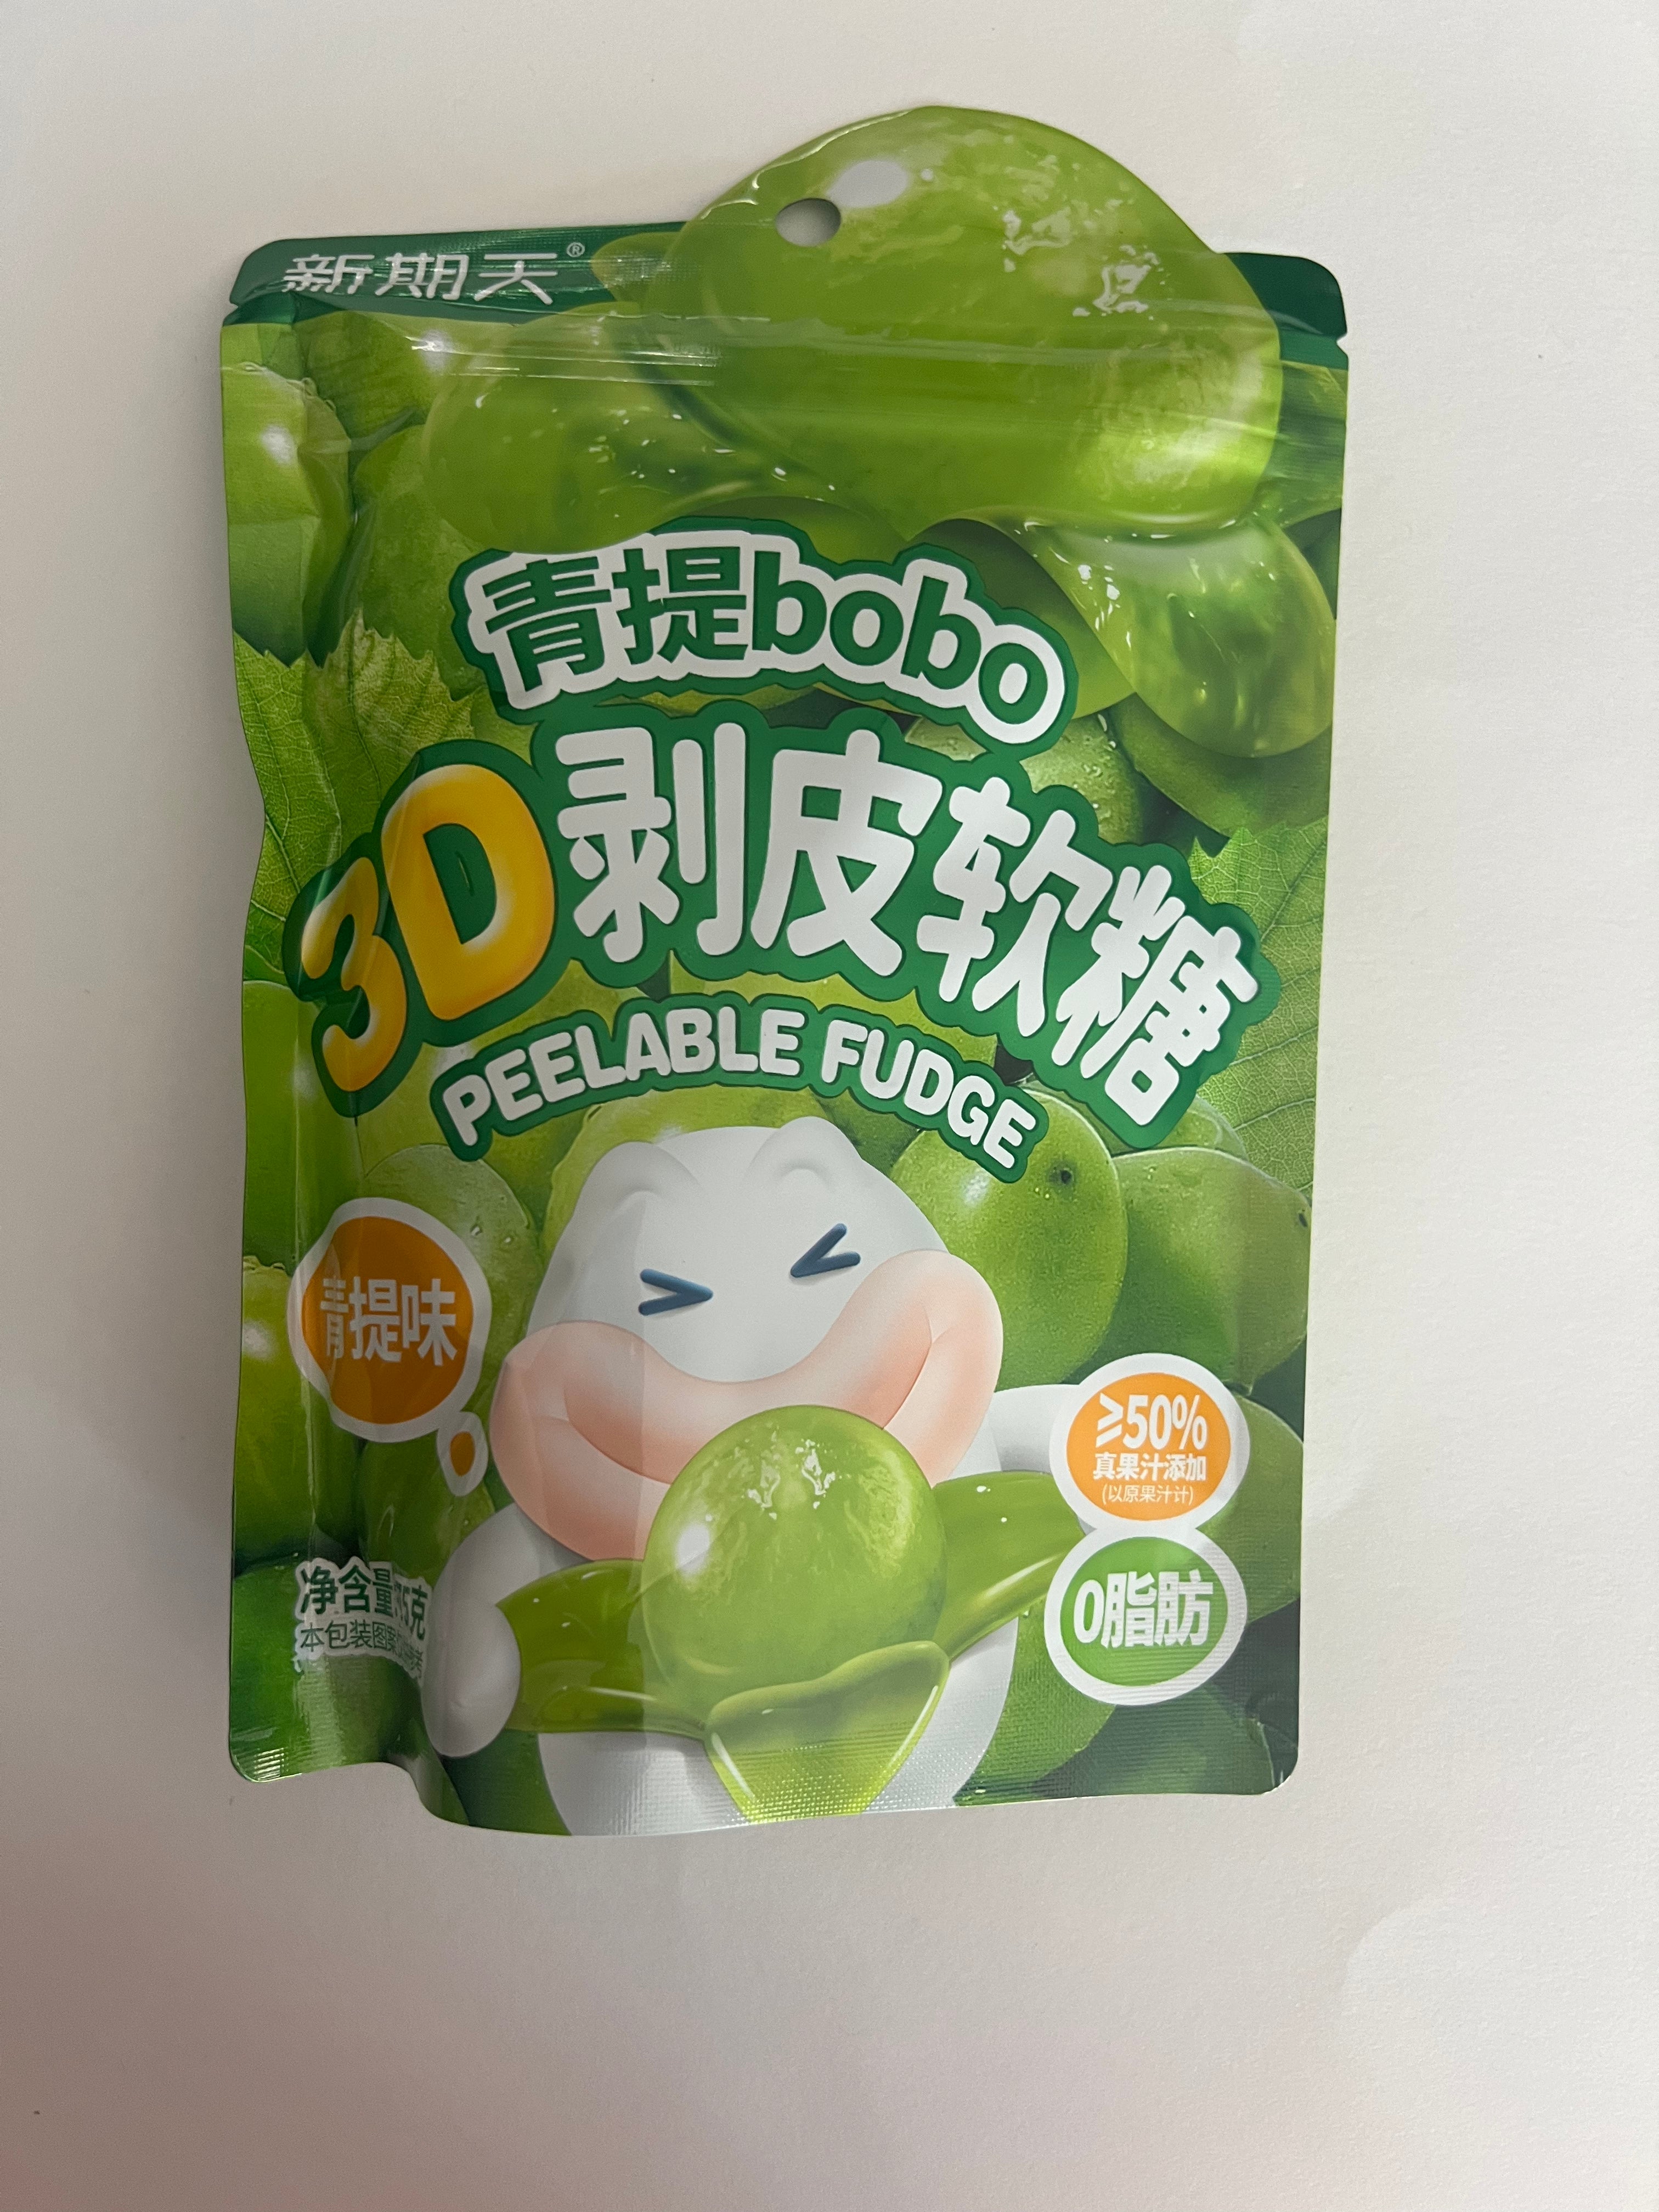 Bobo Peelable Candy Green Flavor